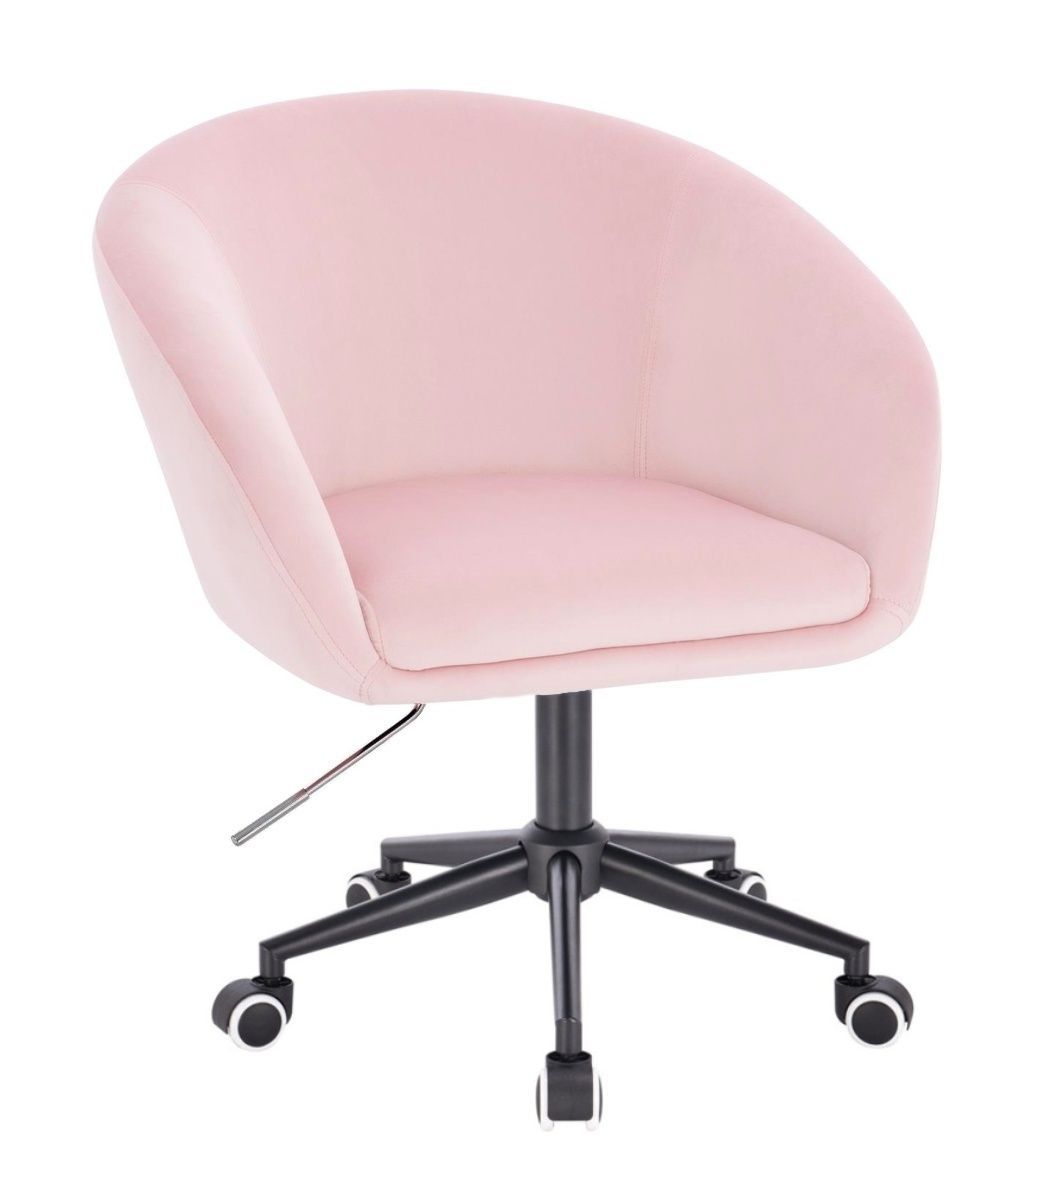  Židle VENICE VELUR na černé podstavě s kolečky - růžová